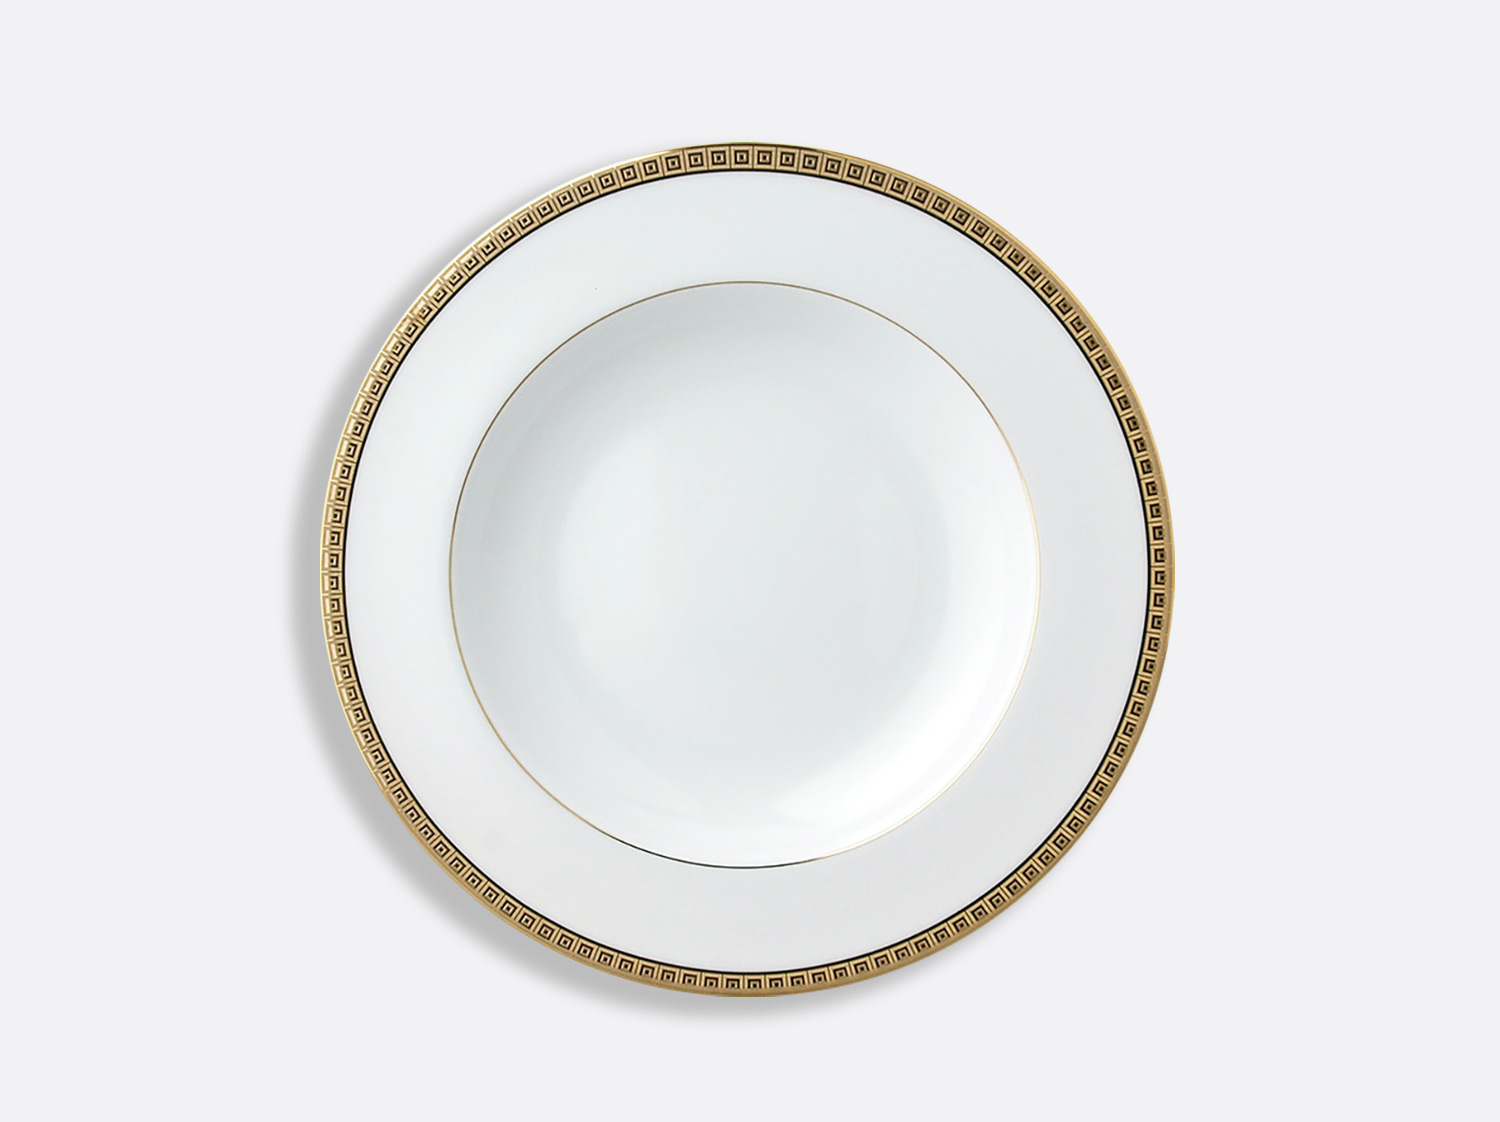 China Rim soup 9" of the collection Athéna gold | Bernardaud